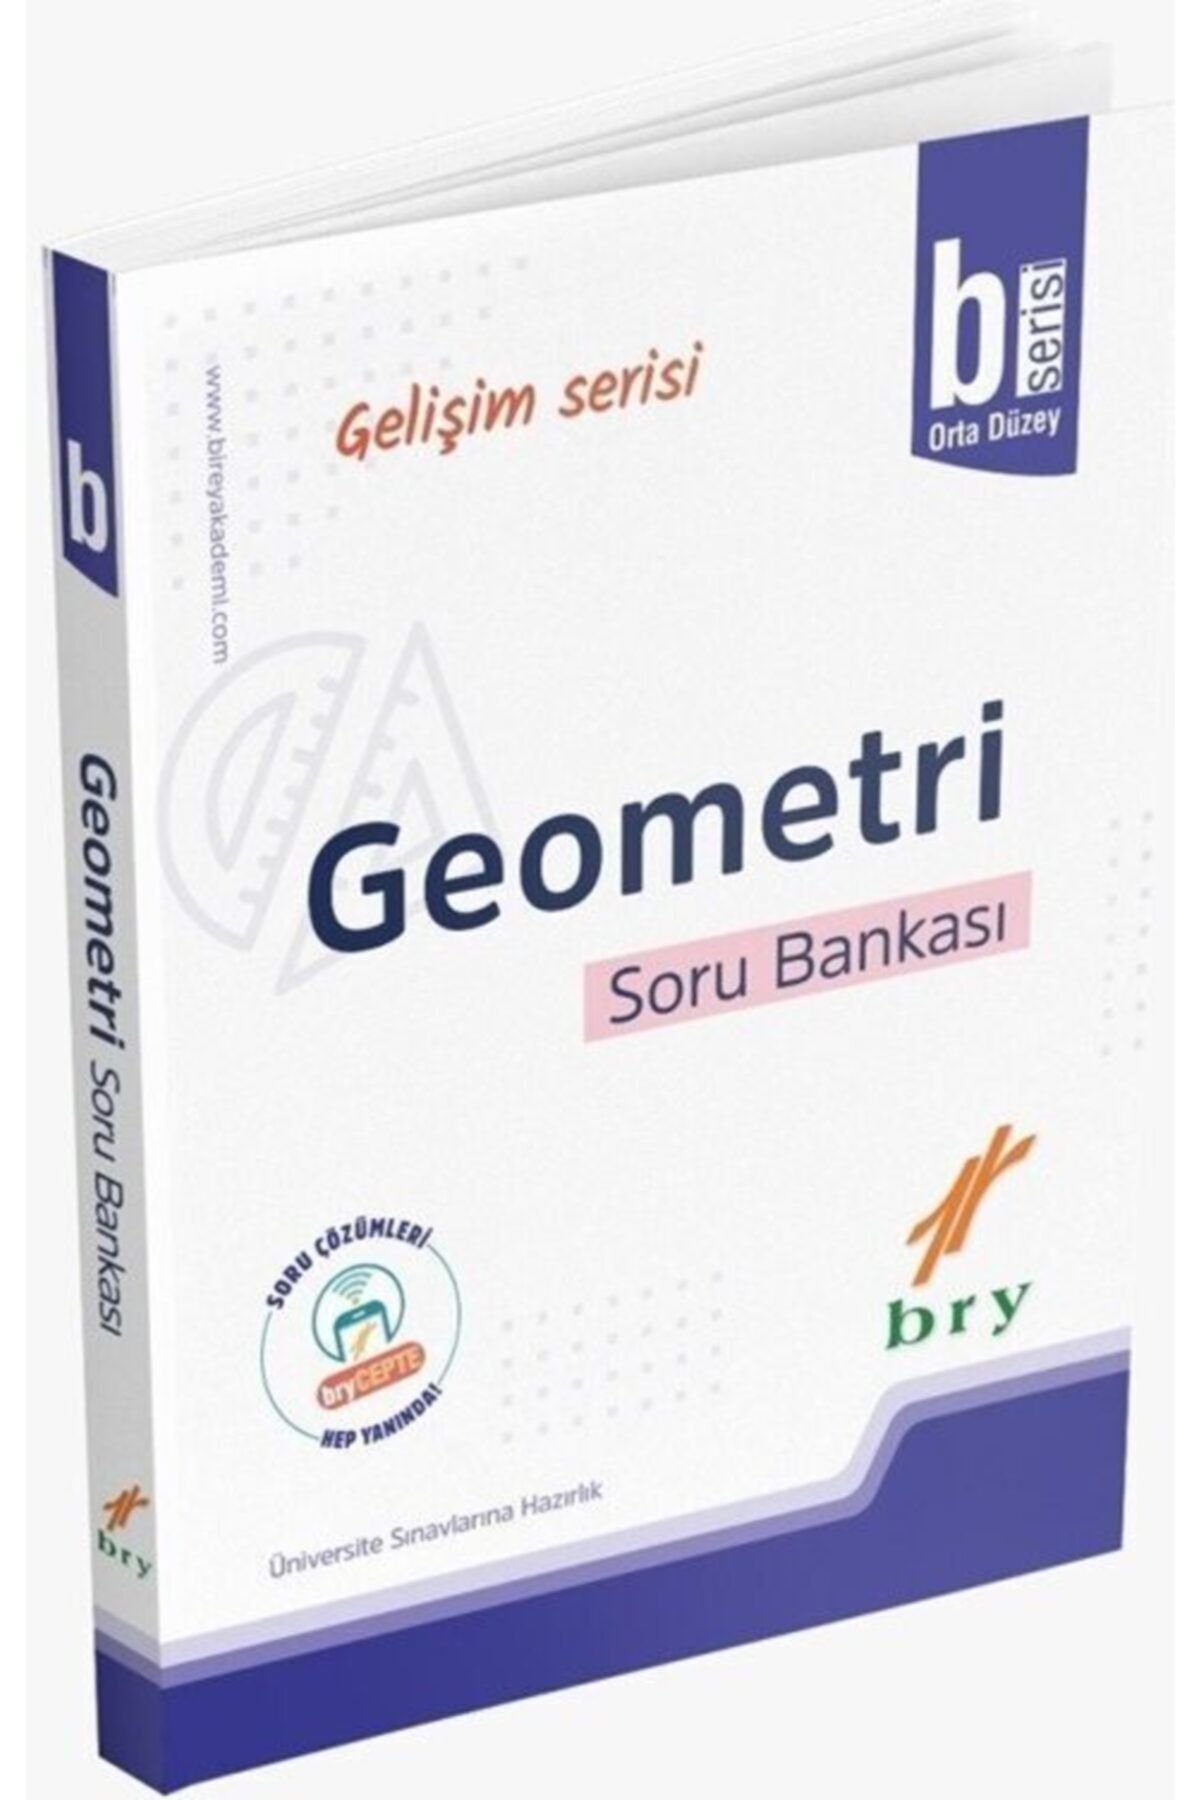 Birey Yayınları Bry - Gelişim Serisi - Geometri - Soru Bankası - B